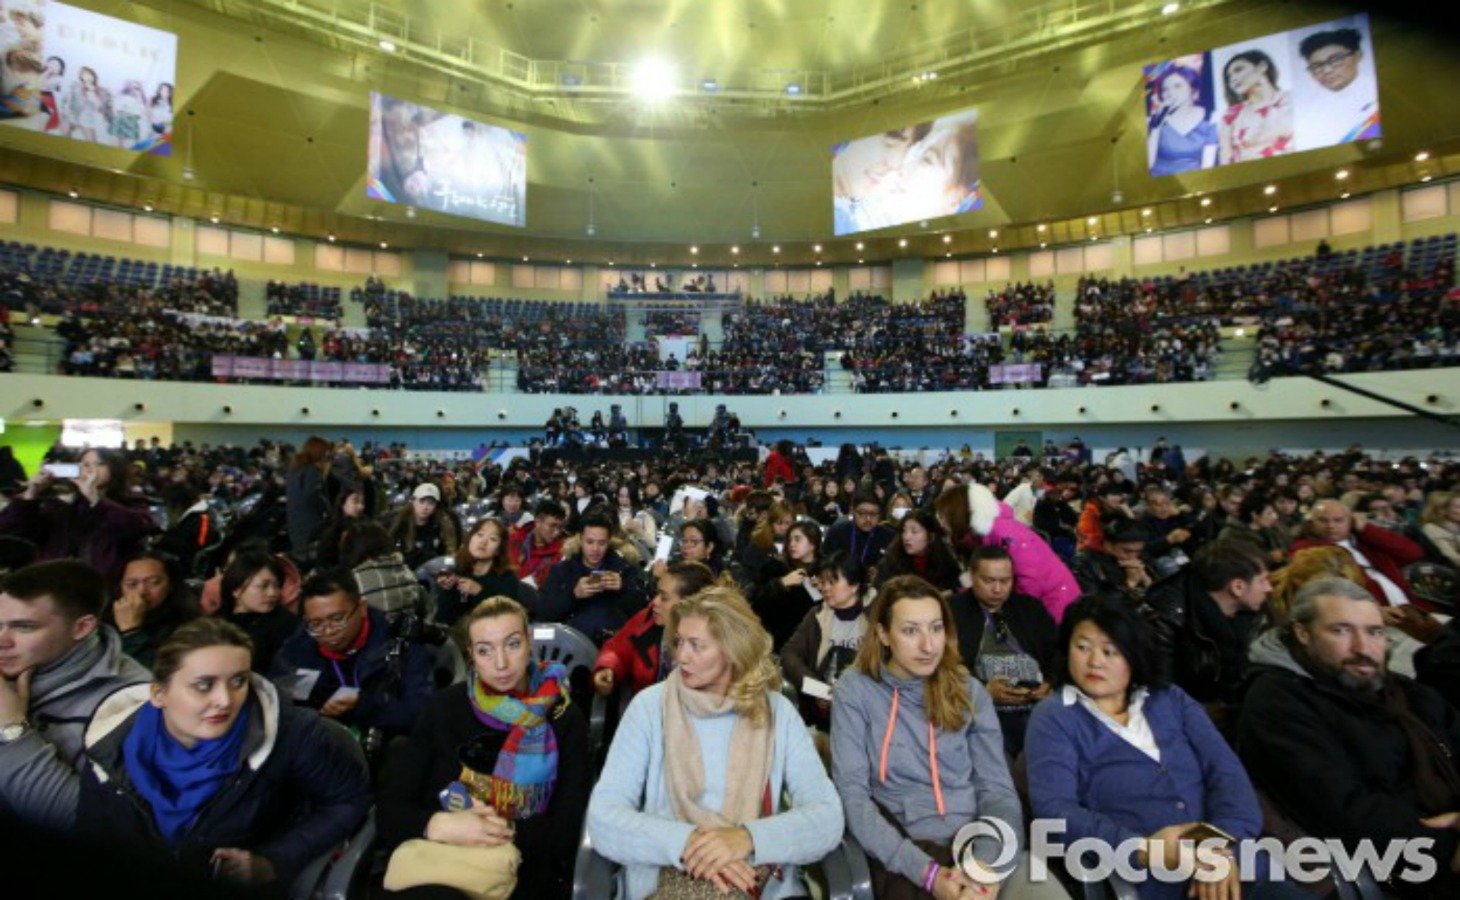 EXO и другие айдол-группы будут выступать на Winter Olympics Festival